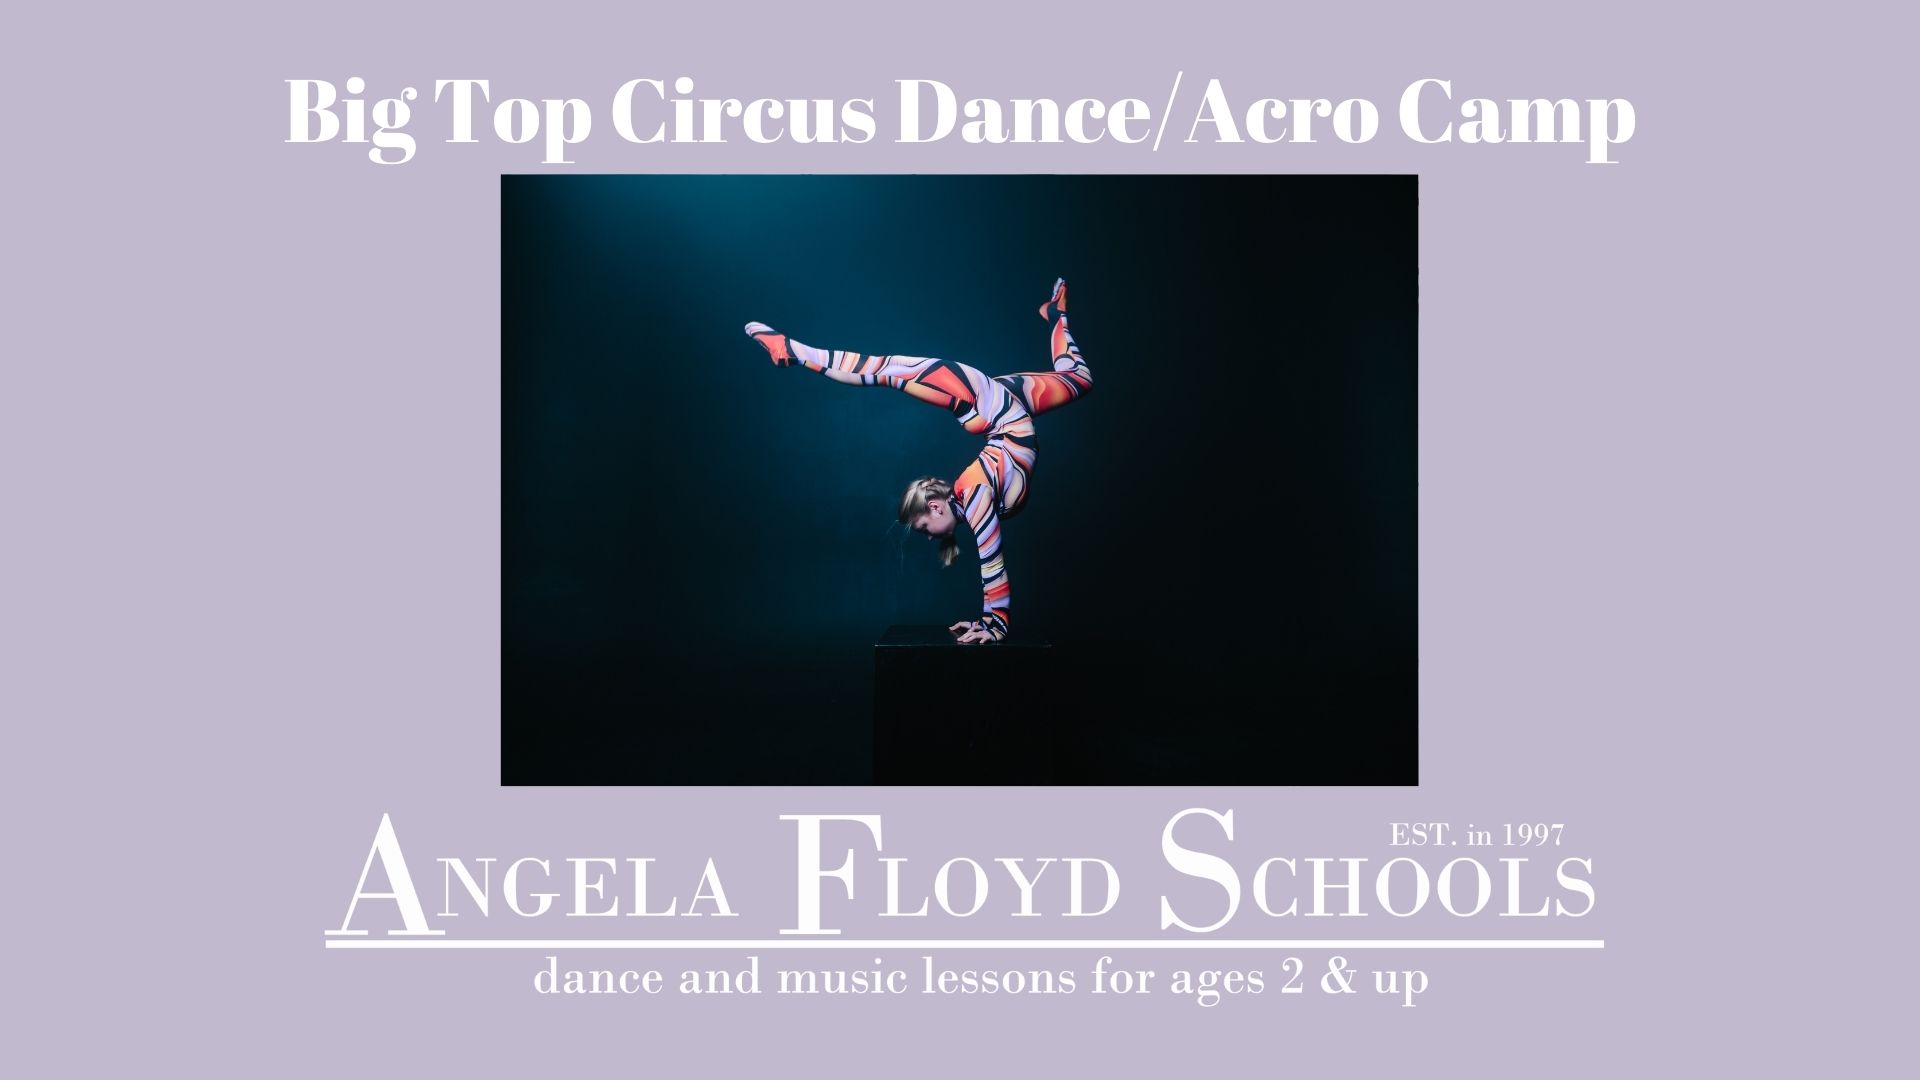 Big Top Circus Dance/Acro Camp